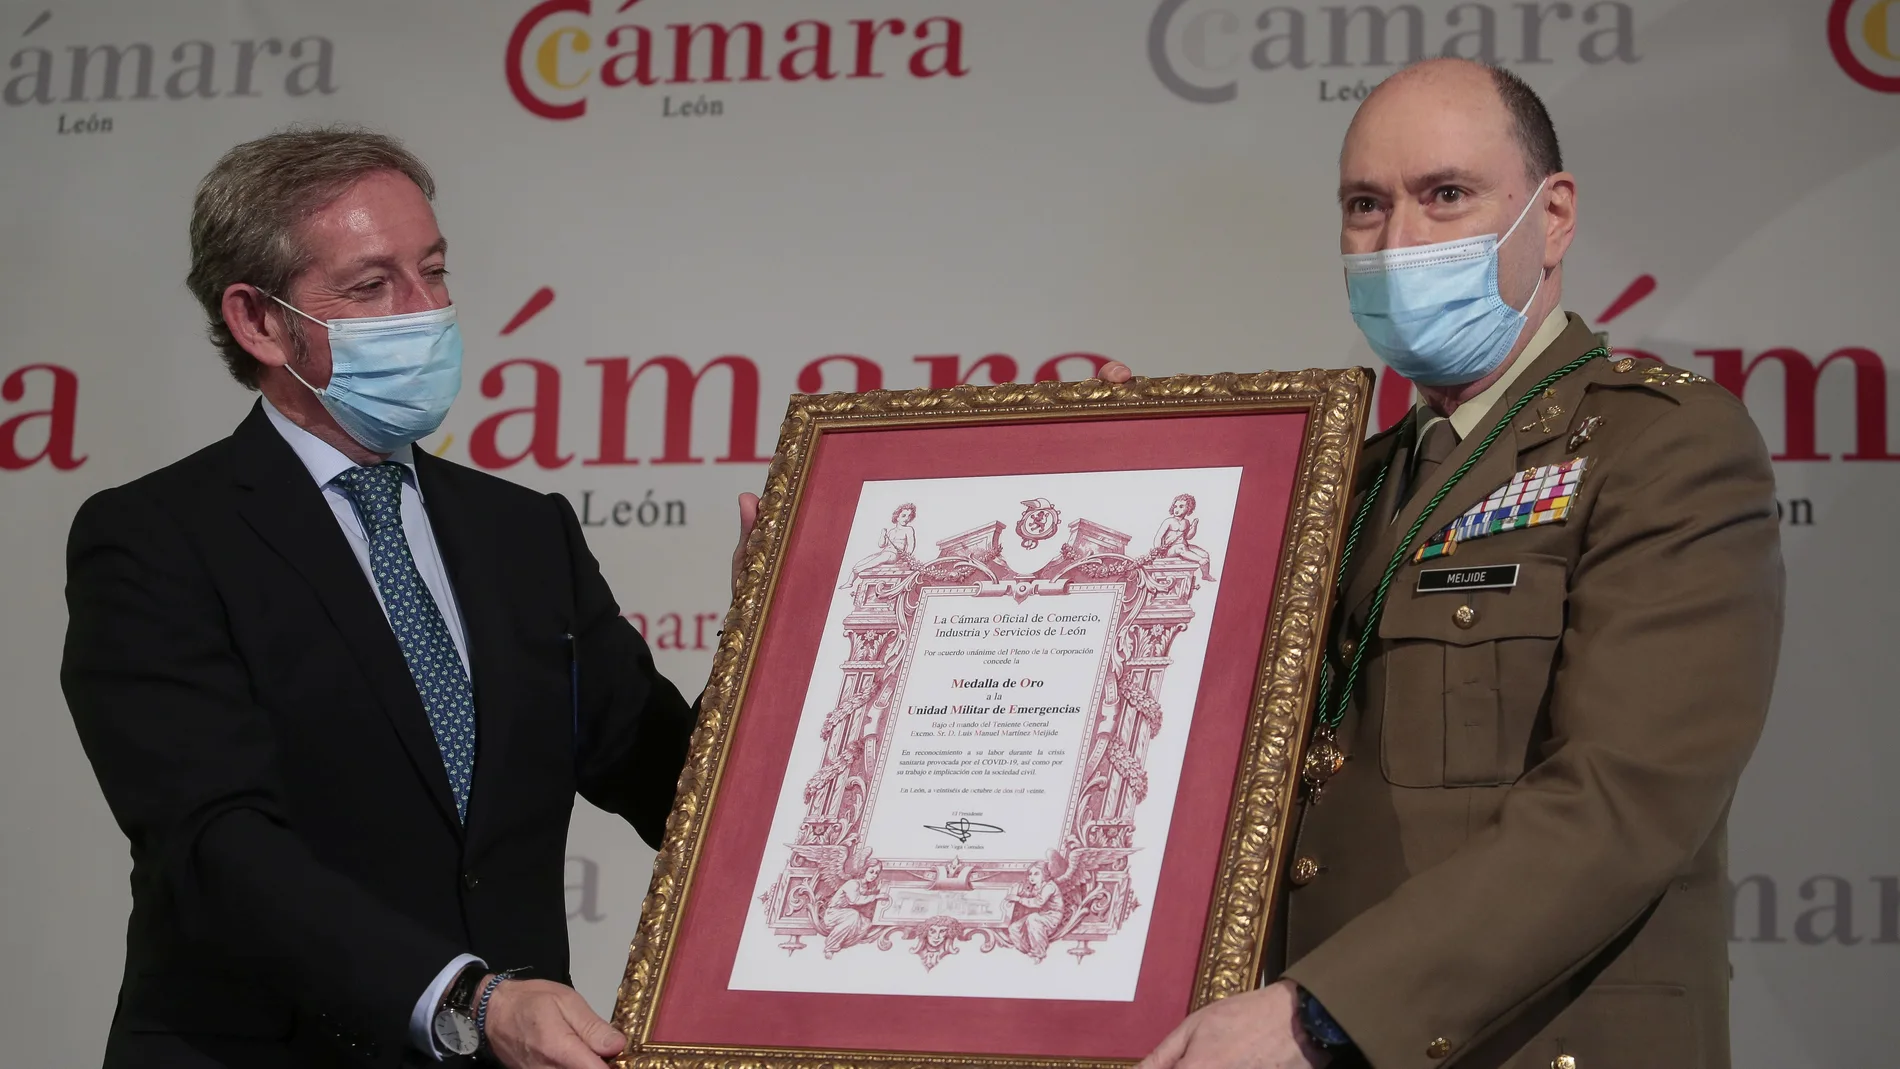 El teniente general Jefe de la UME, Luis Manuel Martínez Meijide, recibe el reconocimiento de la Cámara de Comercio de León por su labor en pandemia, de manos de Javier Vega